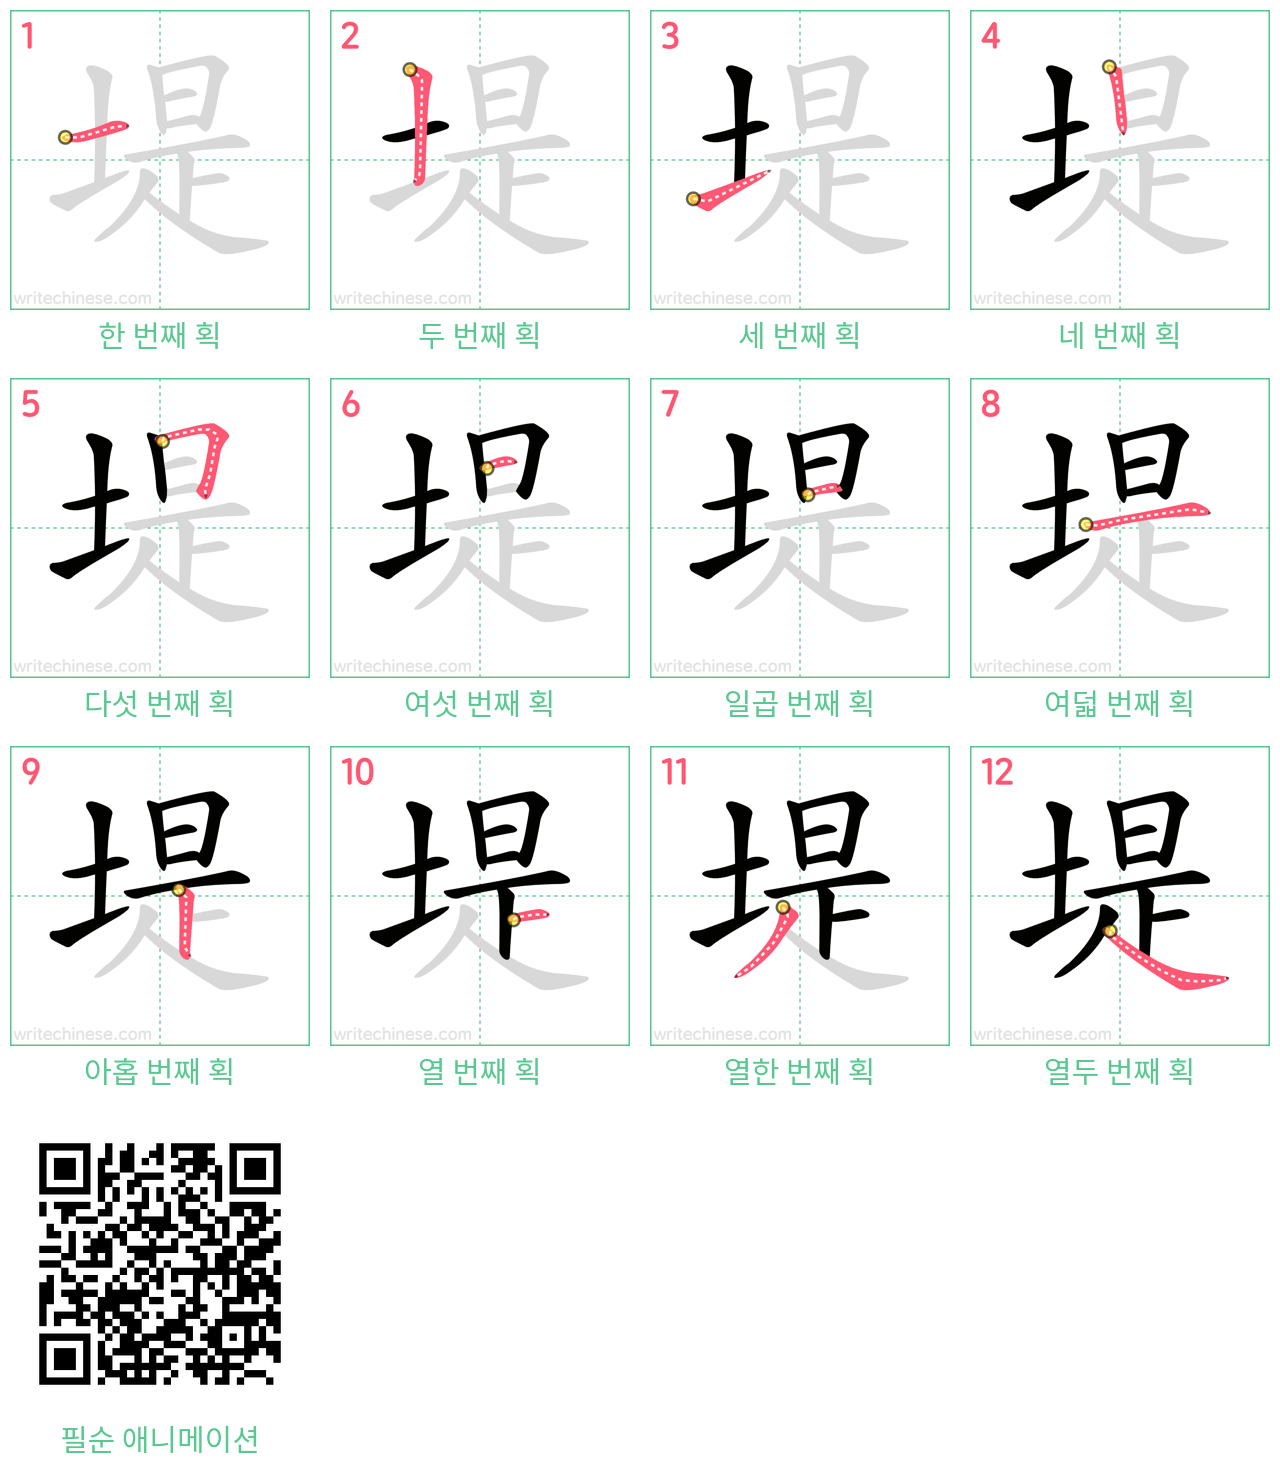 堤 step-by-step stroke order diagrams